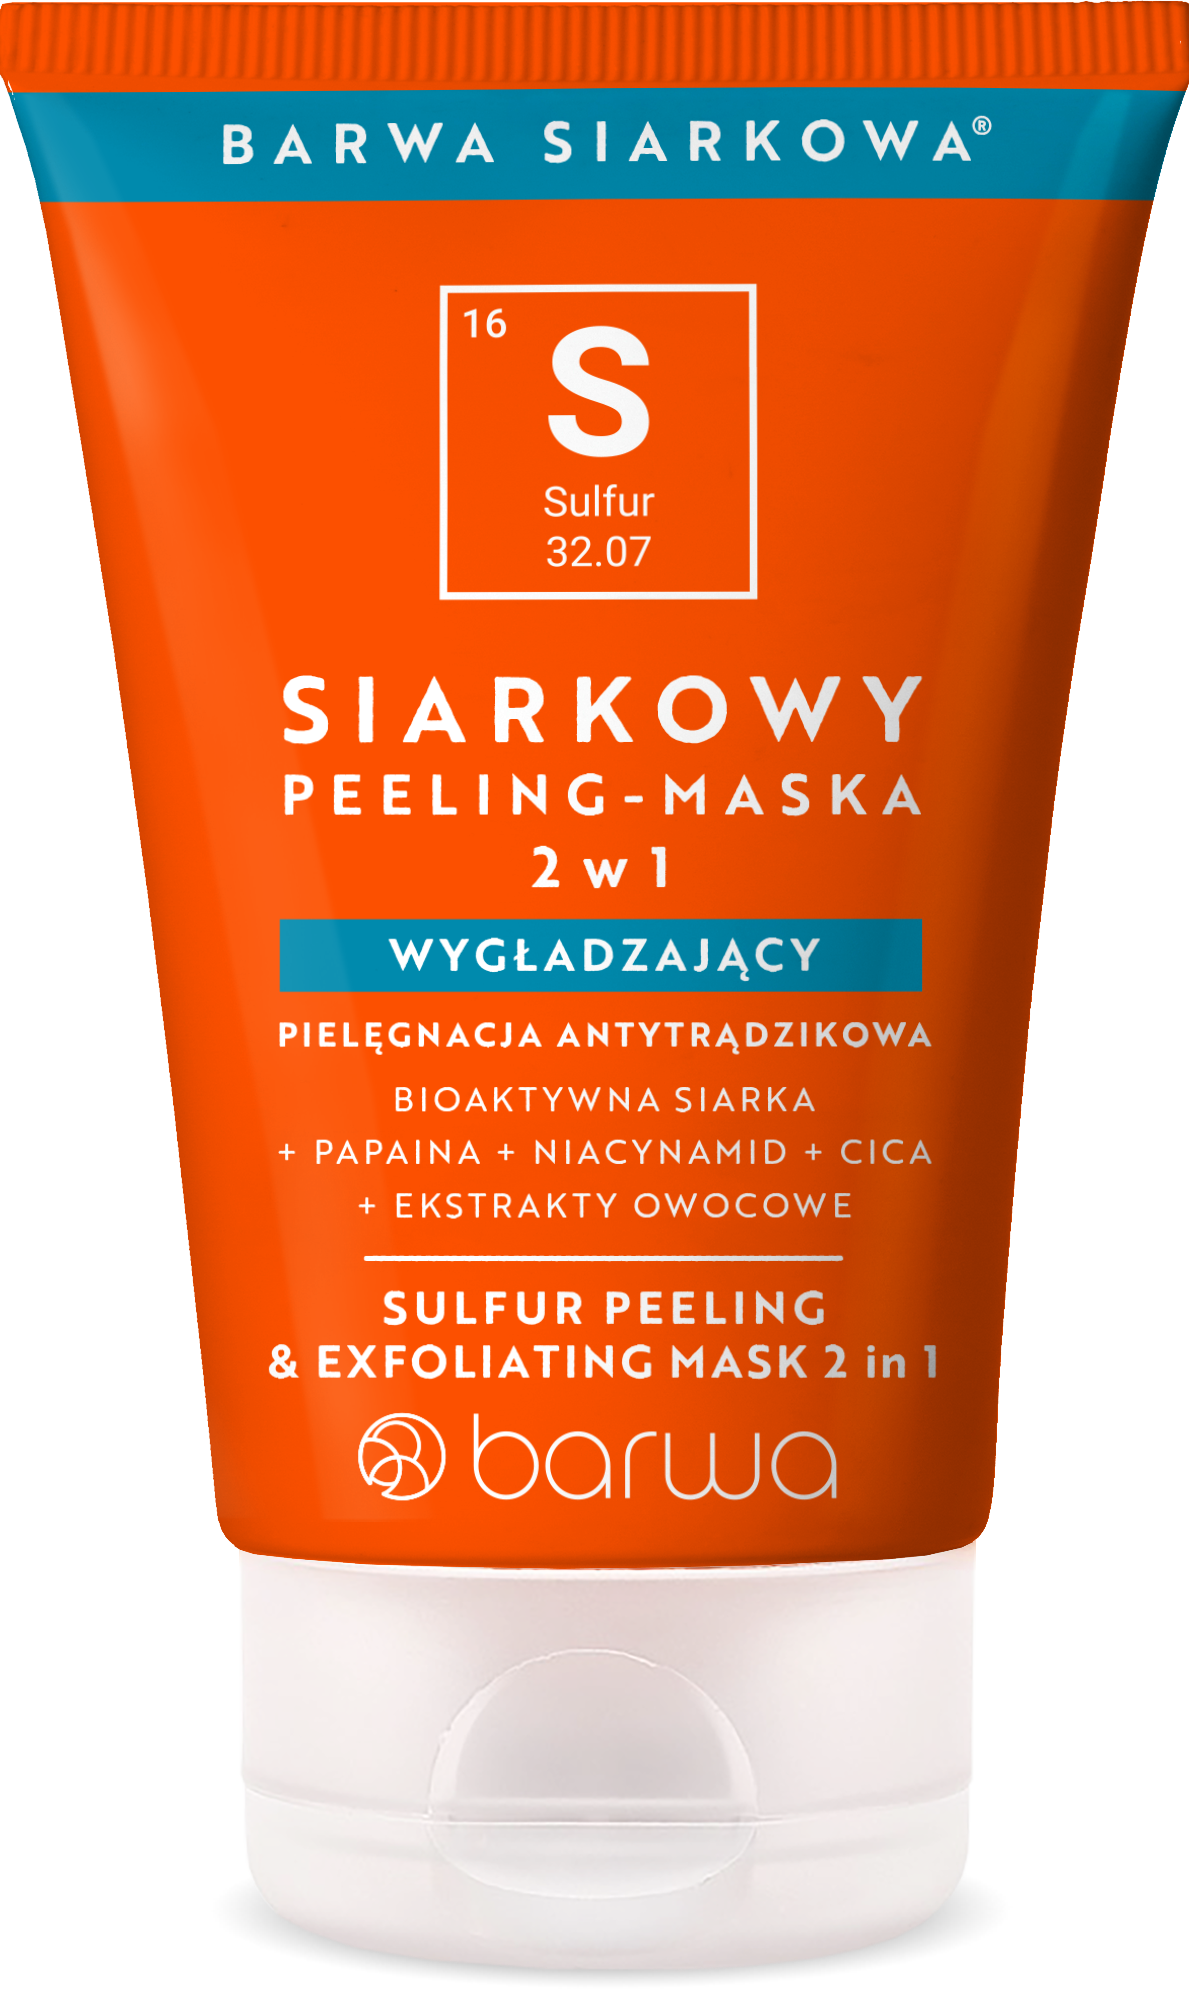 BARWA Siarkowa® Siarkowy Peeling-Maska 2w1 Wygładzający 